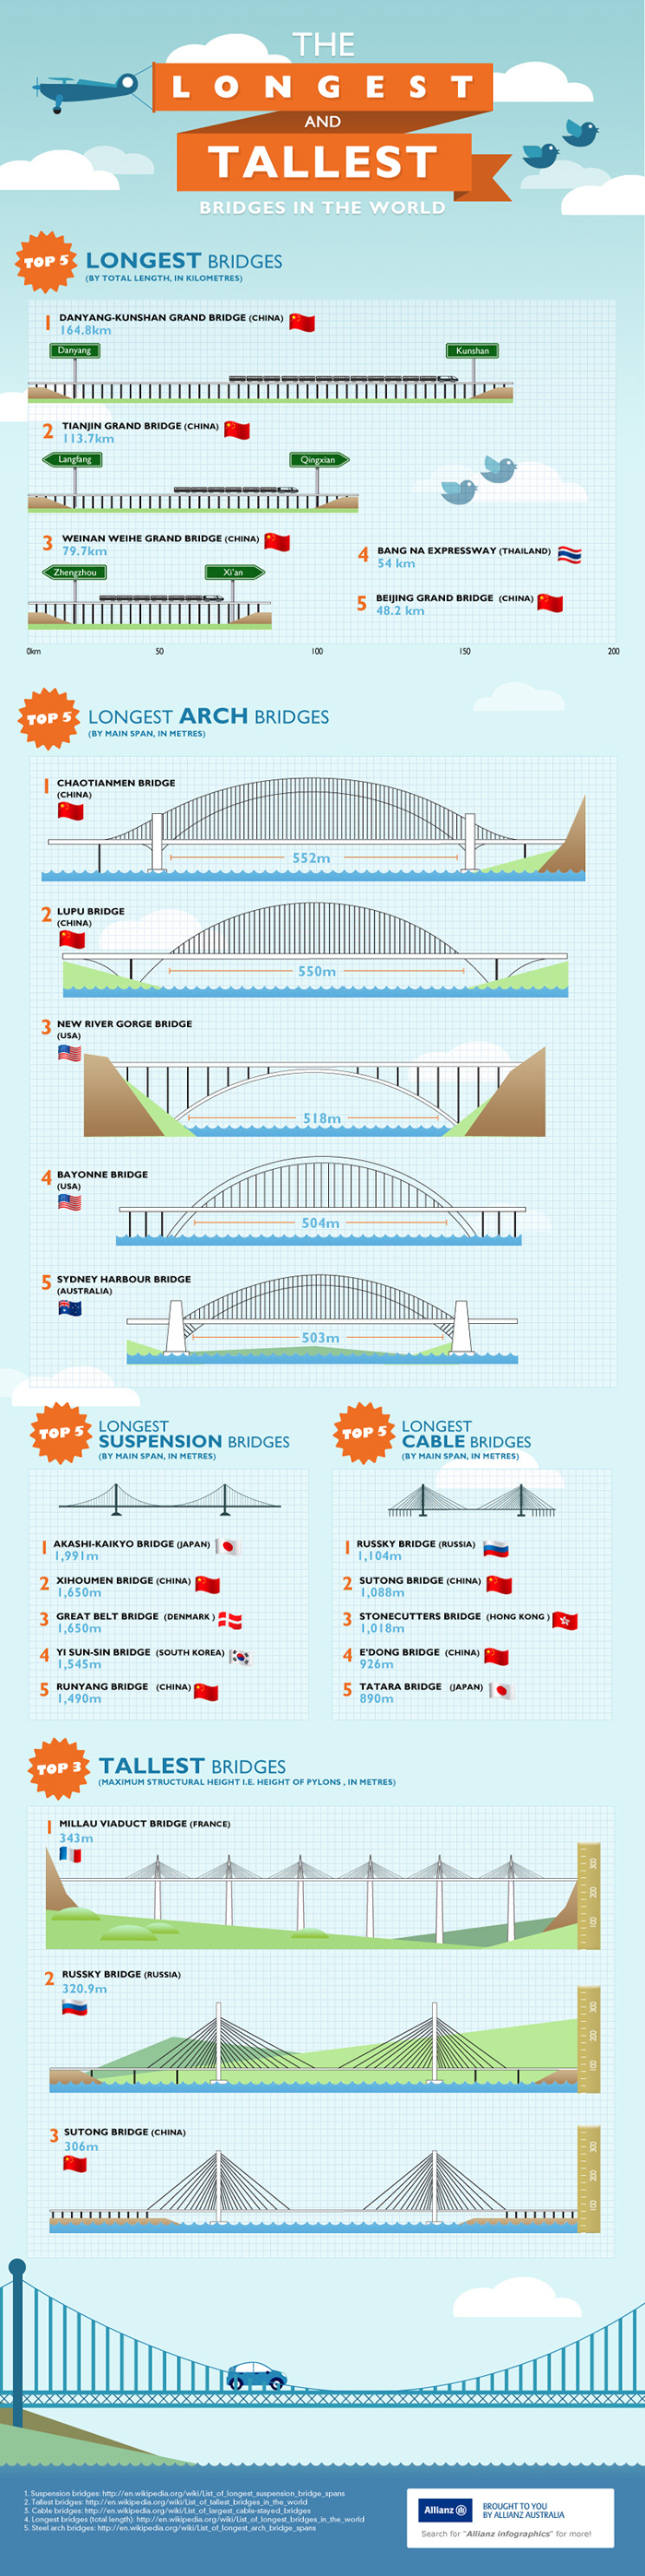 The Longest and Tallest Bridges